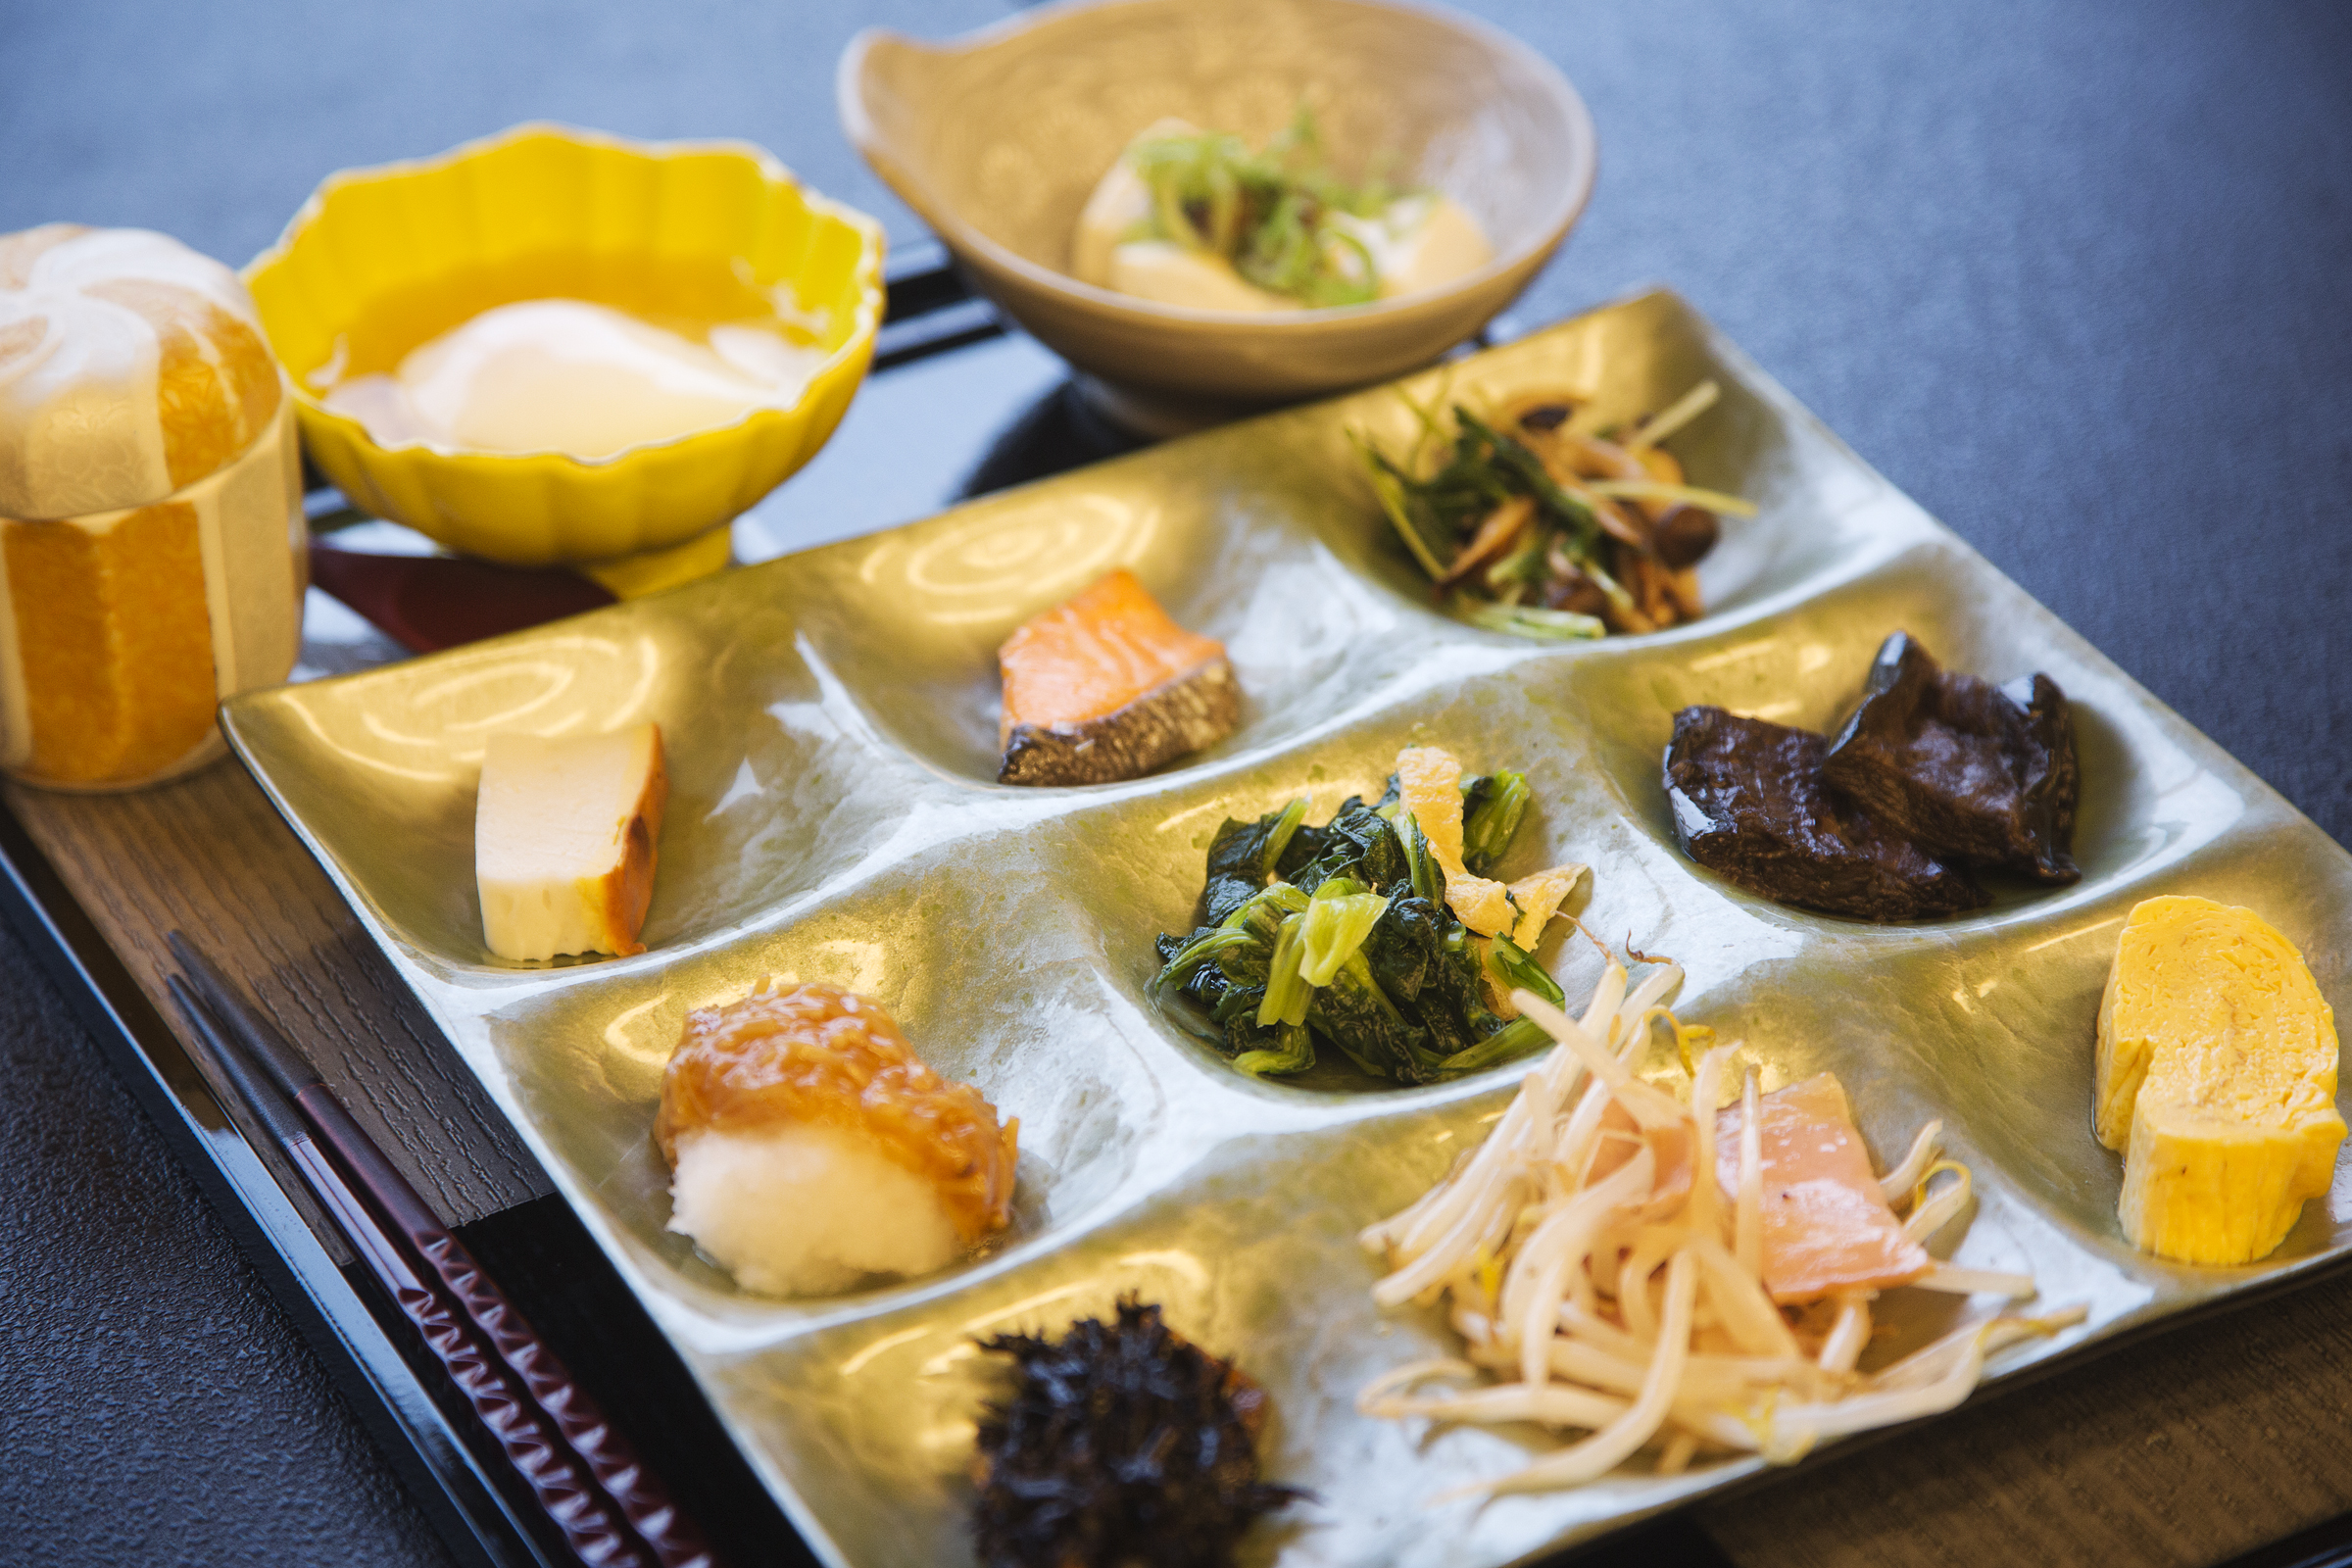 三重県の食材を活かした懐石料理 | 貸切風呂の老舗旅館 寿亭 | 三重県 